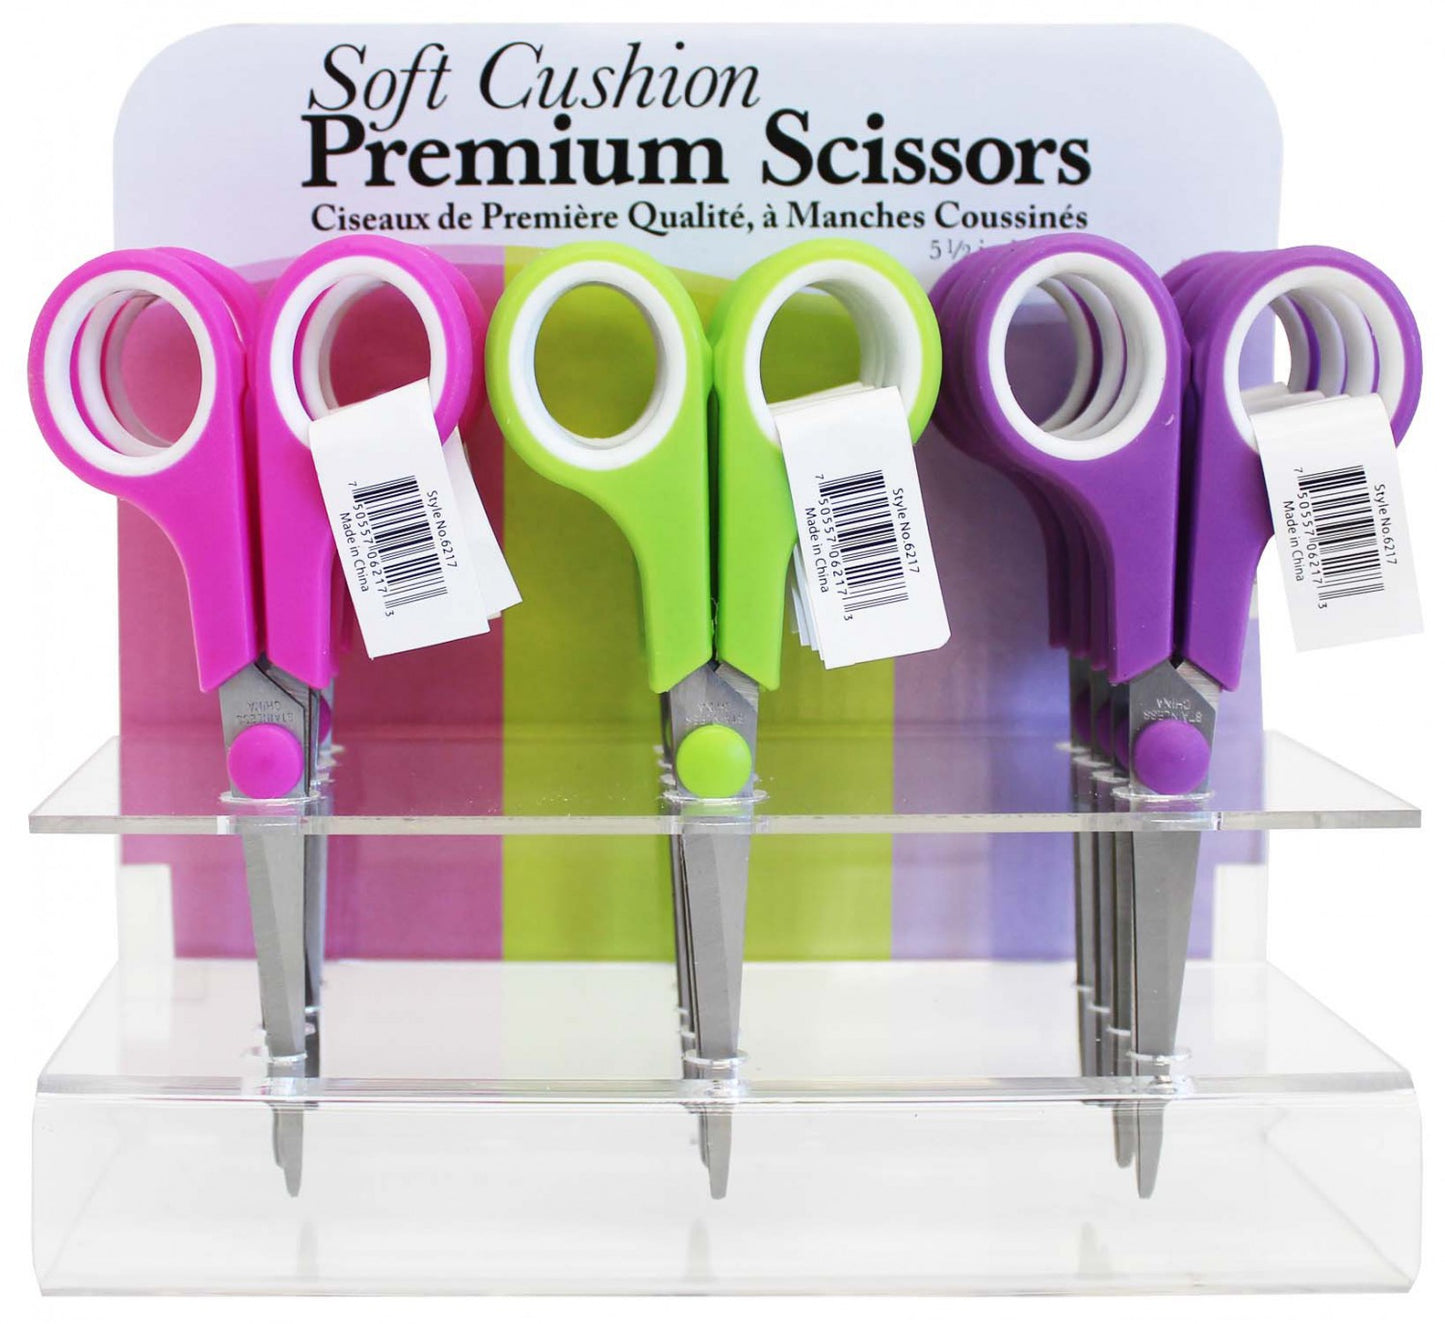 Soft Cushion Premium Scissors, 5 1/2"